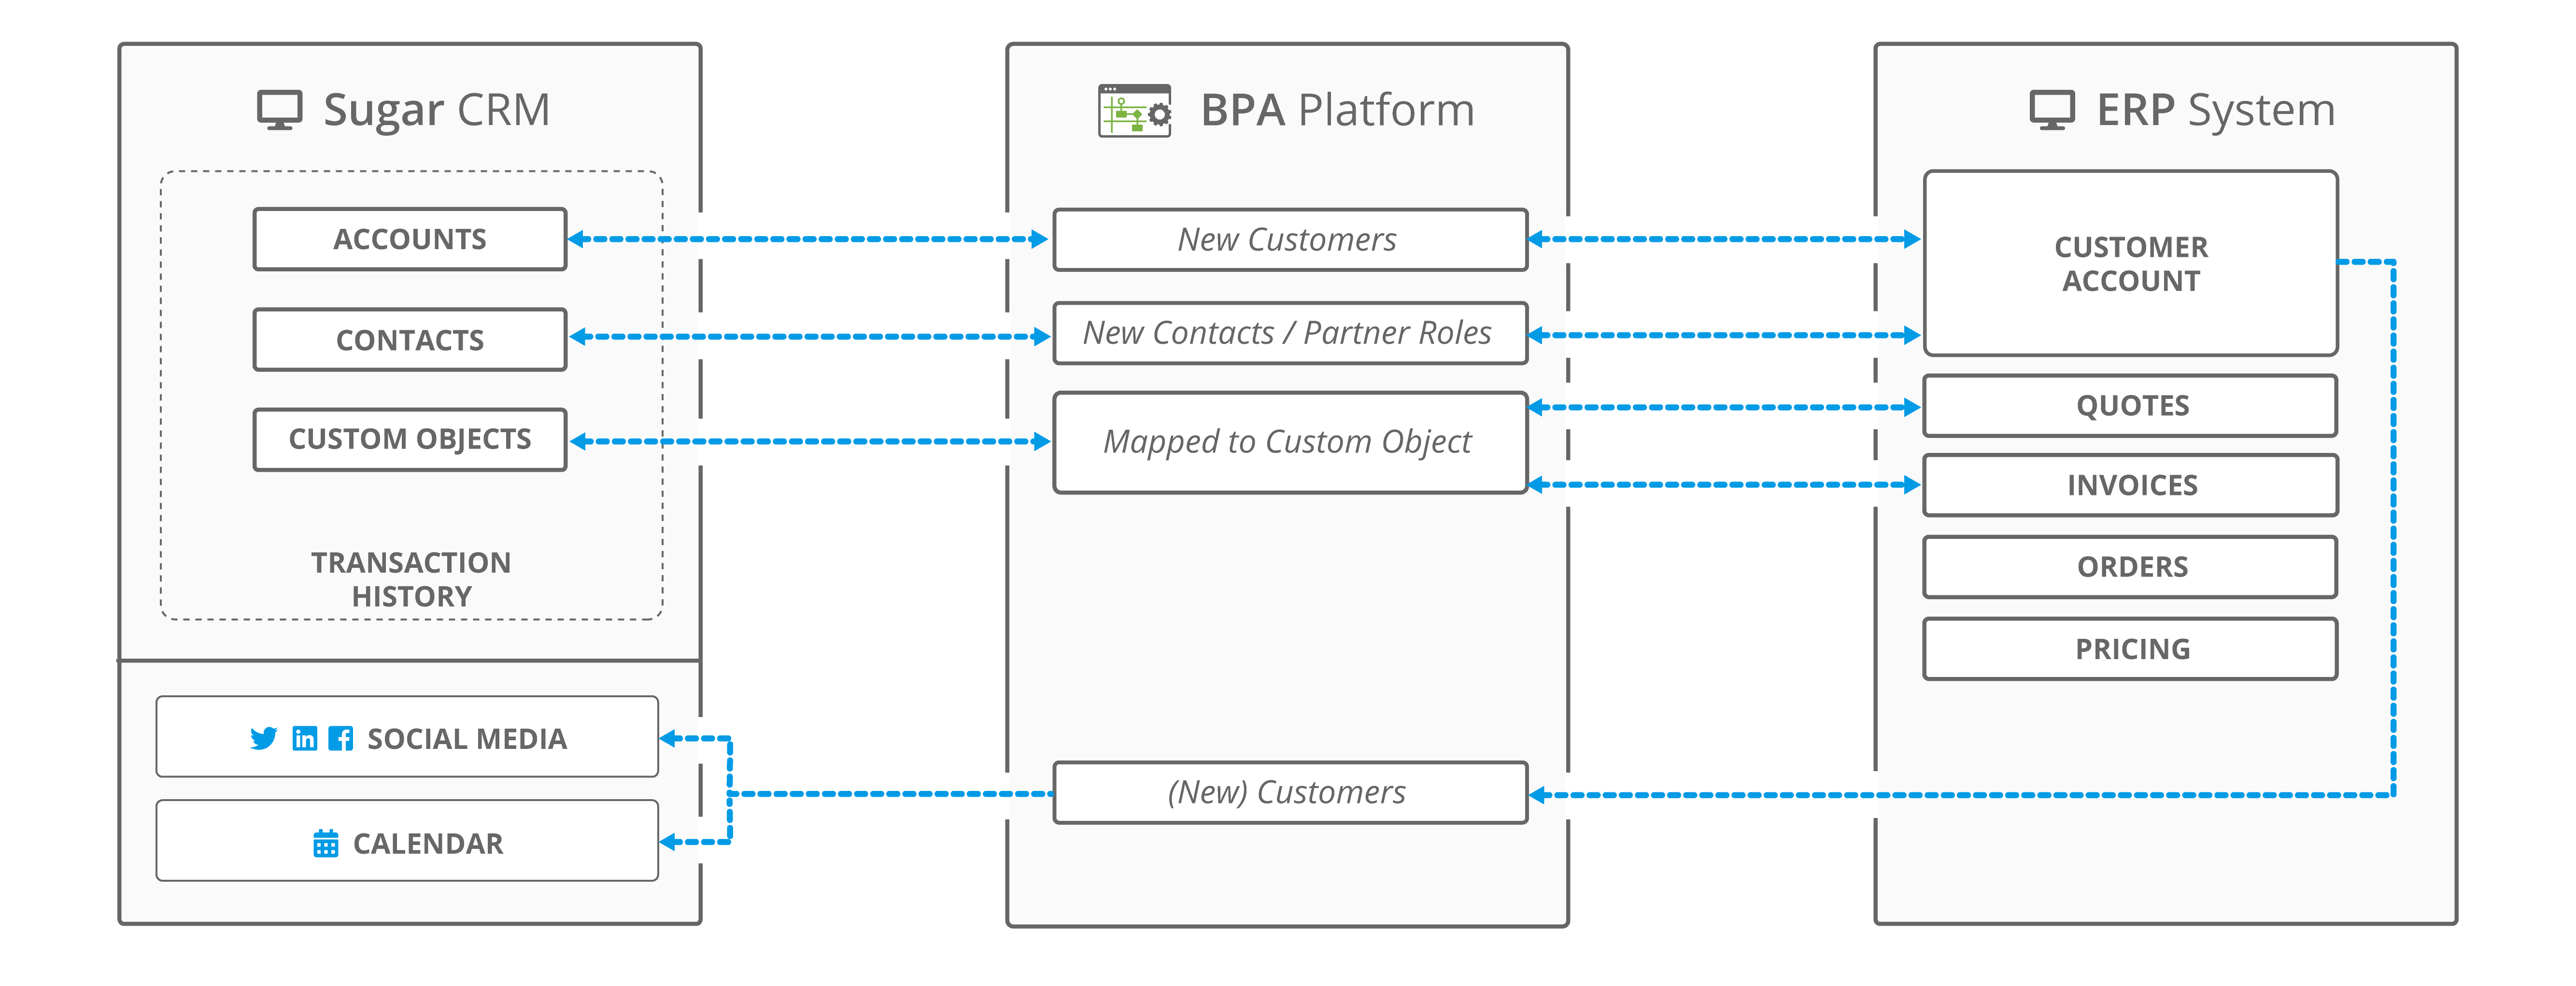 SugarCRM ERP integration architecture touchpoints - BPA Platform